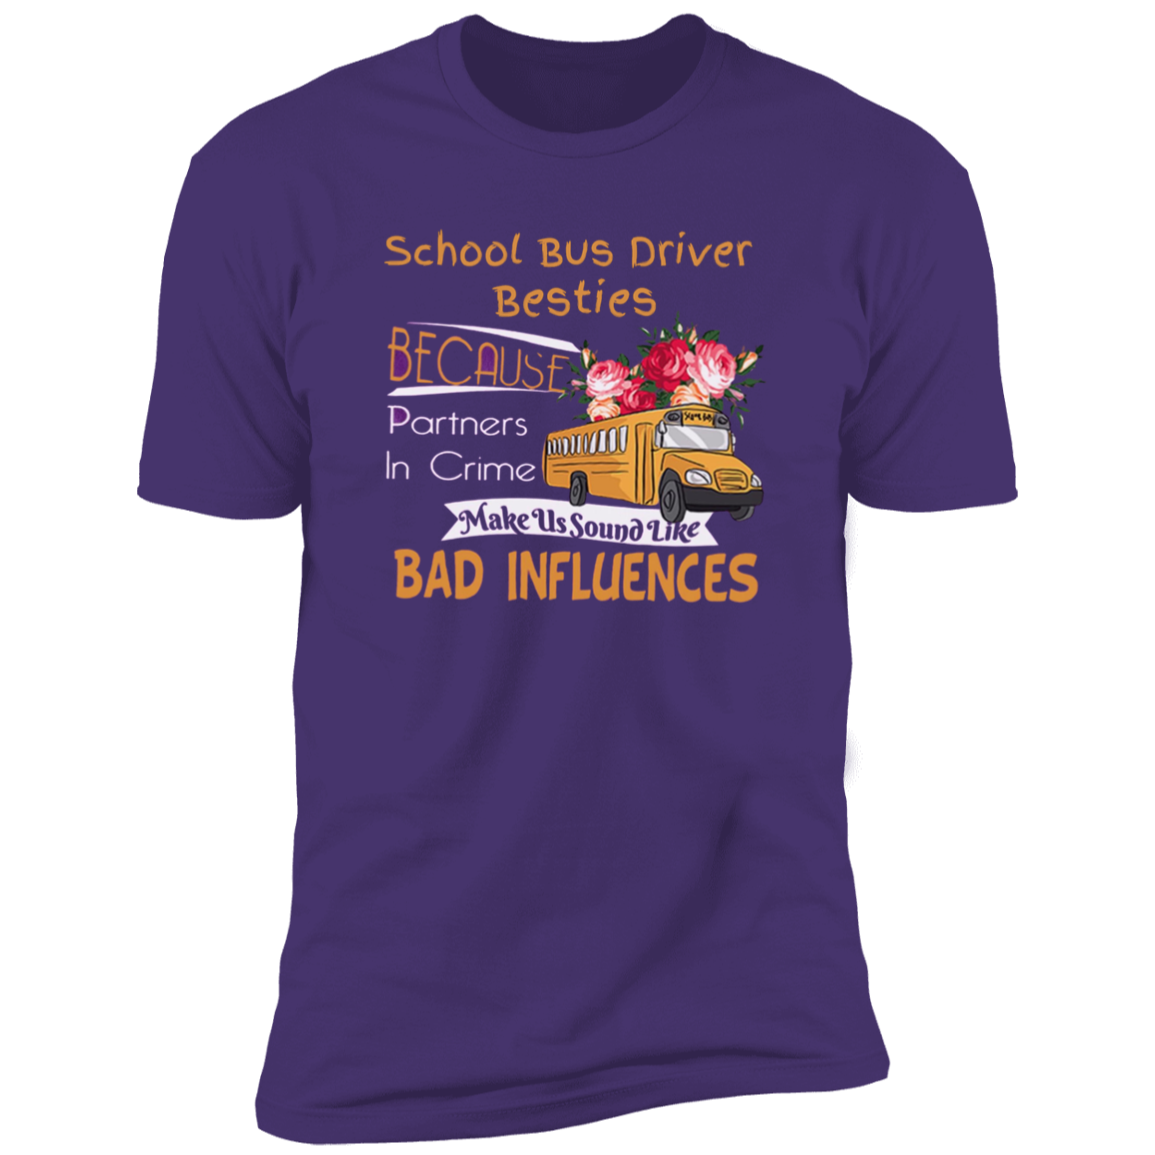 School Bus Driver Besties Tee